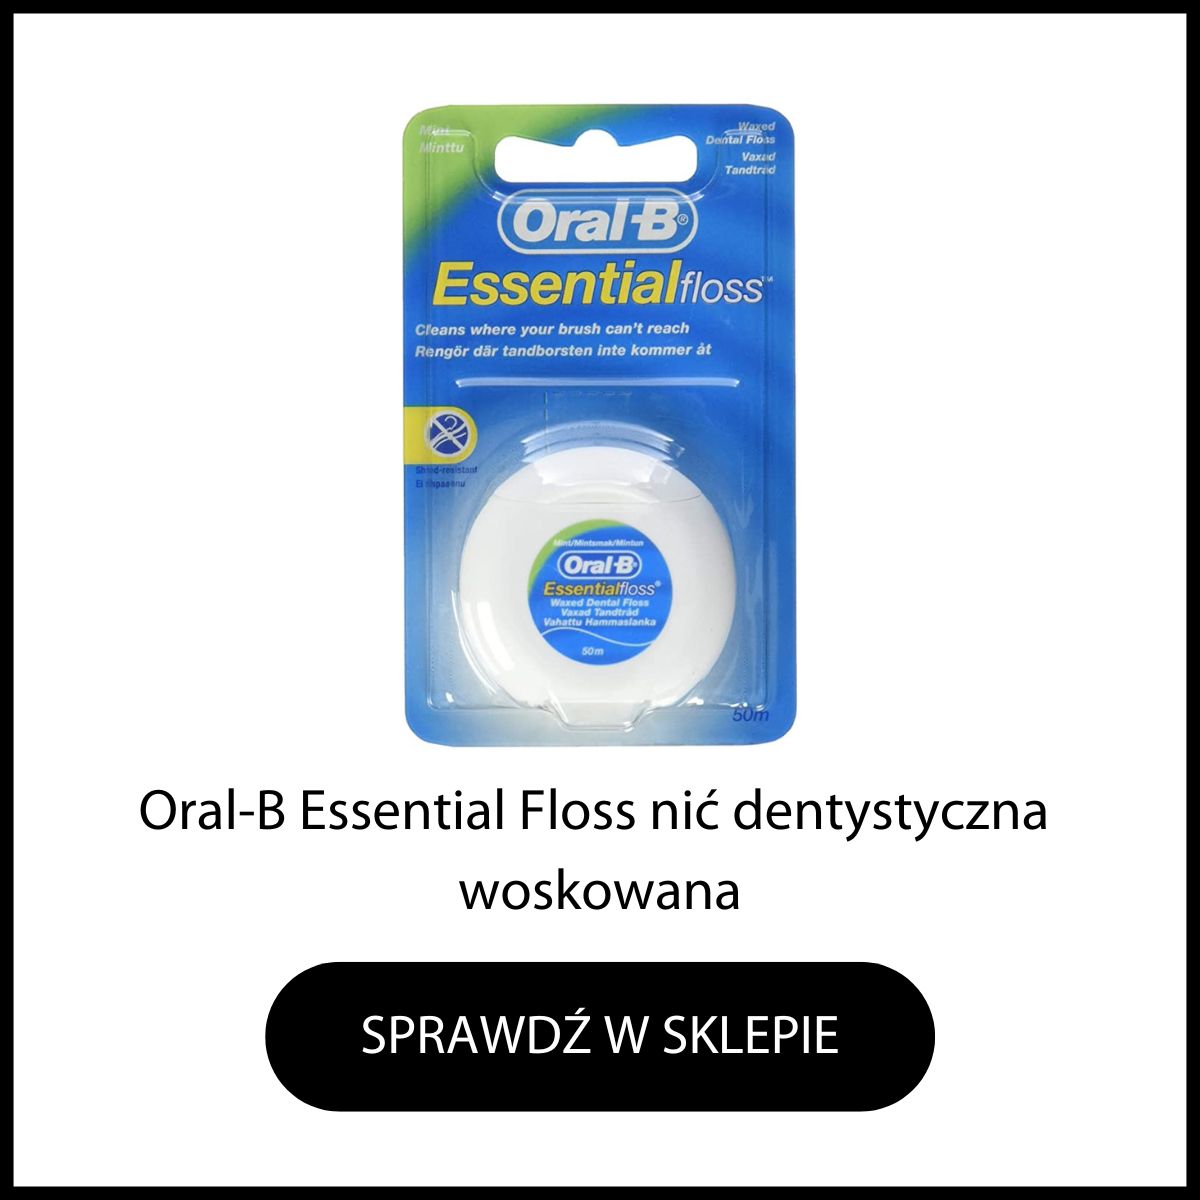 OralB Essential Floss nić dentystyczna woskowana